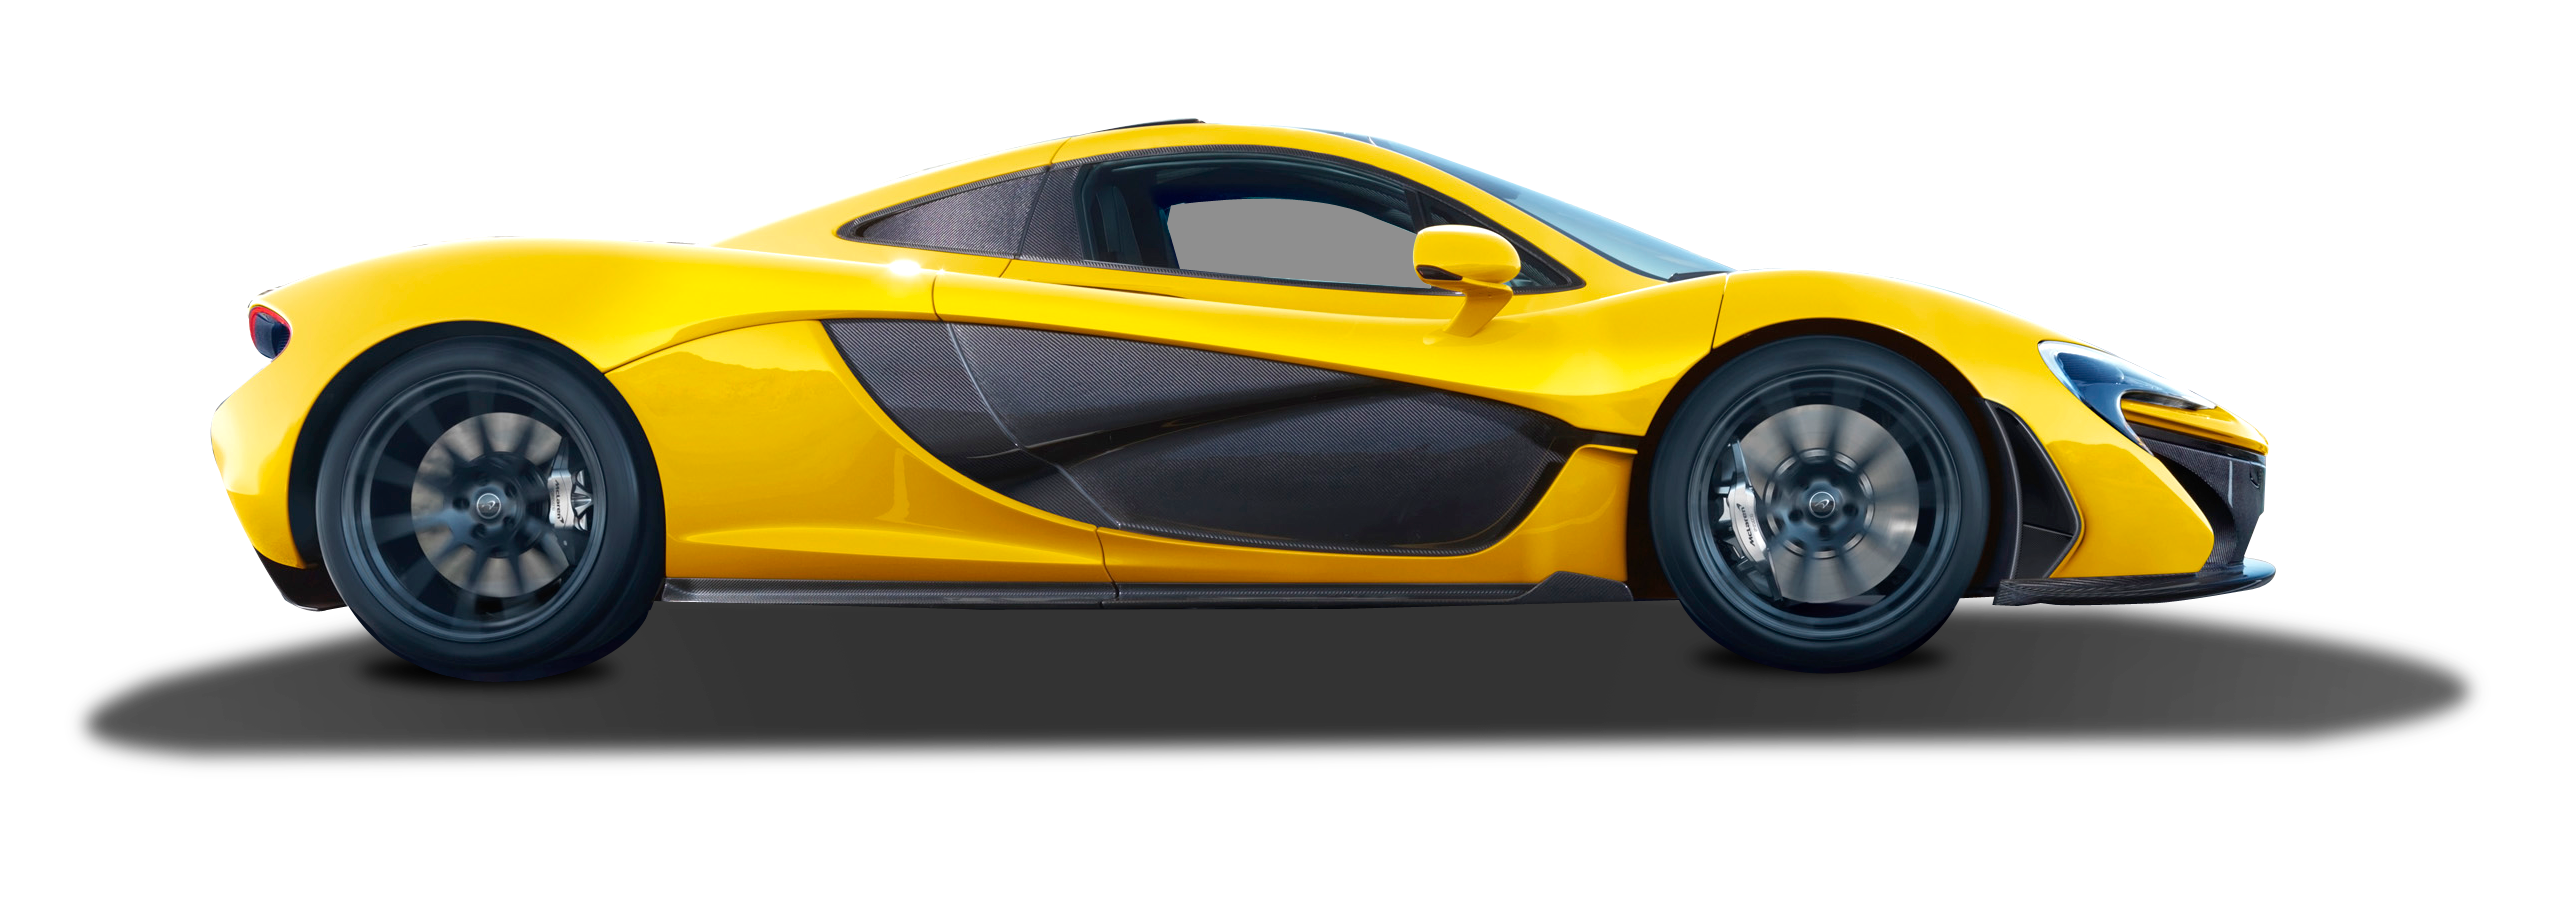 พื้นหลังสีเหลือง McLaren โปร่งใส